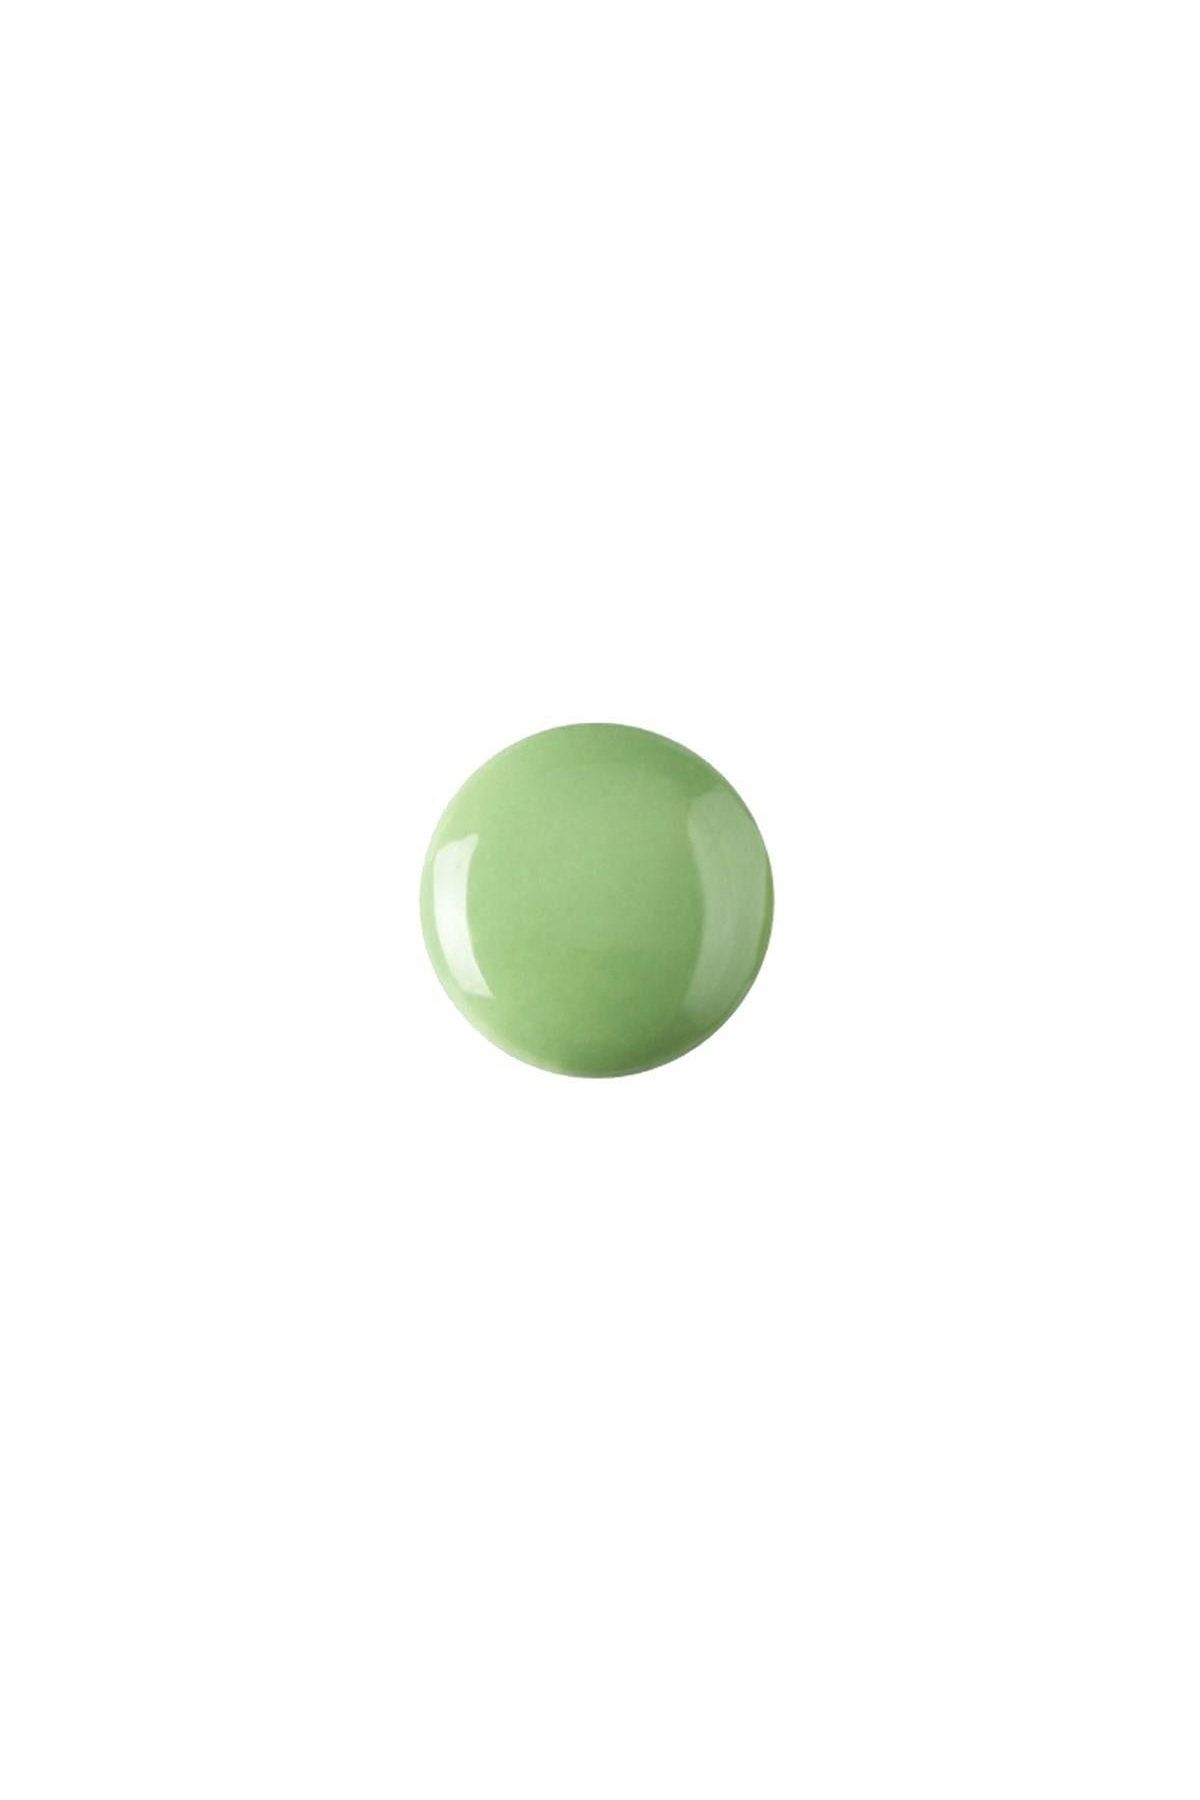 Refsan Renkli Hazır Seramik Sır 6133 Fıstık Yeşili - 200 ml